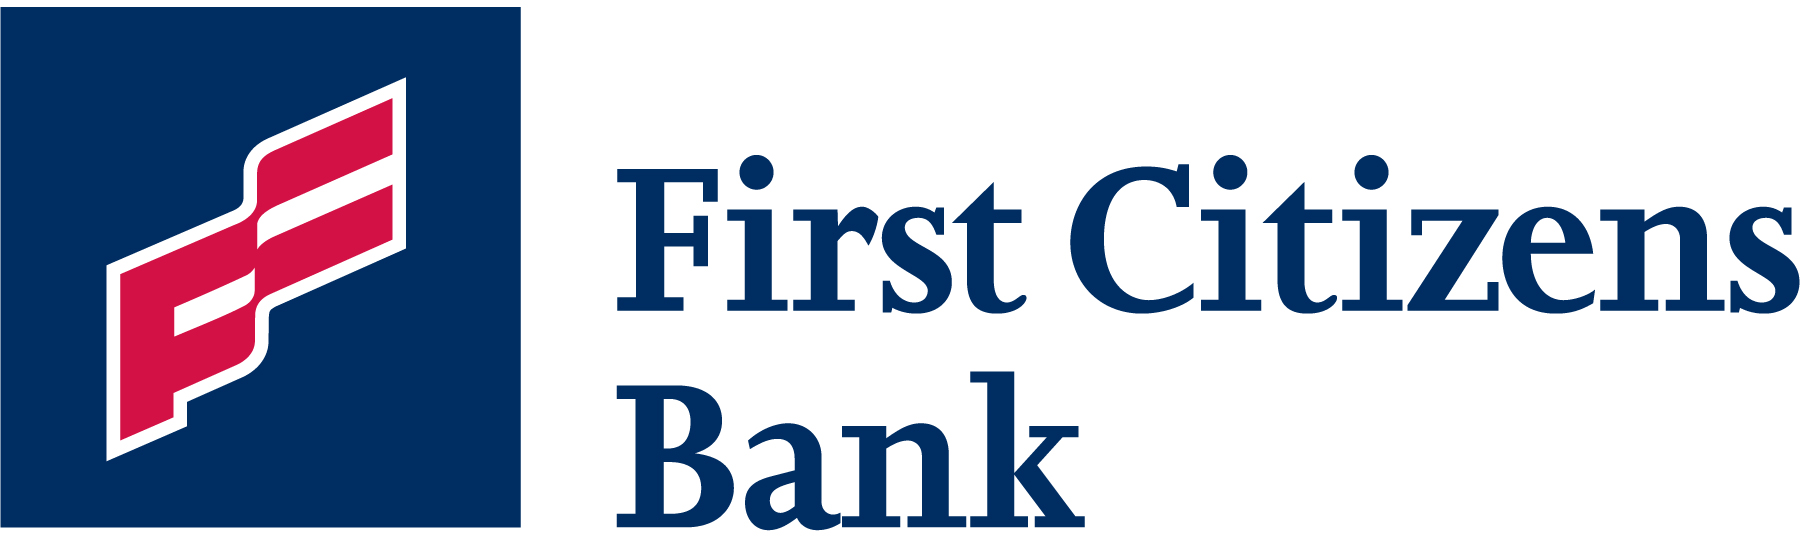 bank logo clip art - photo #44